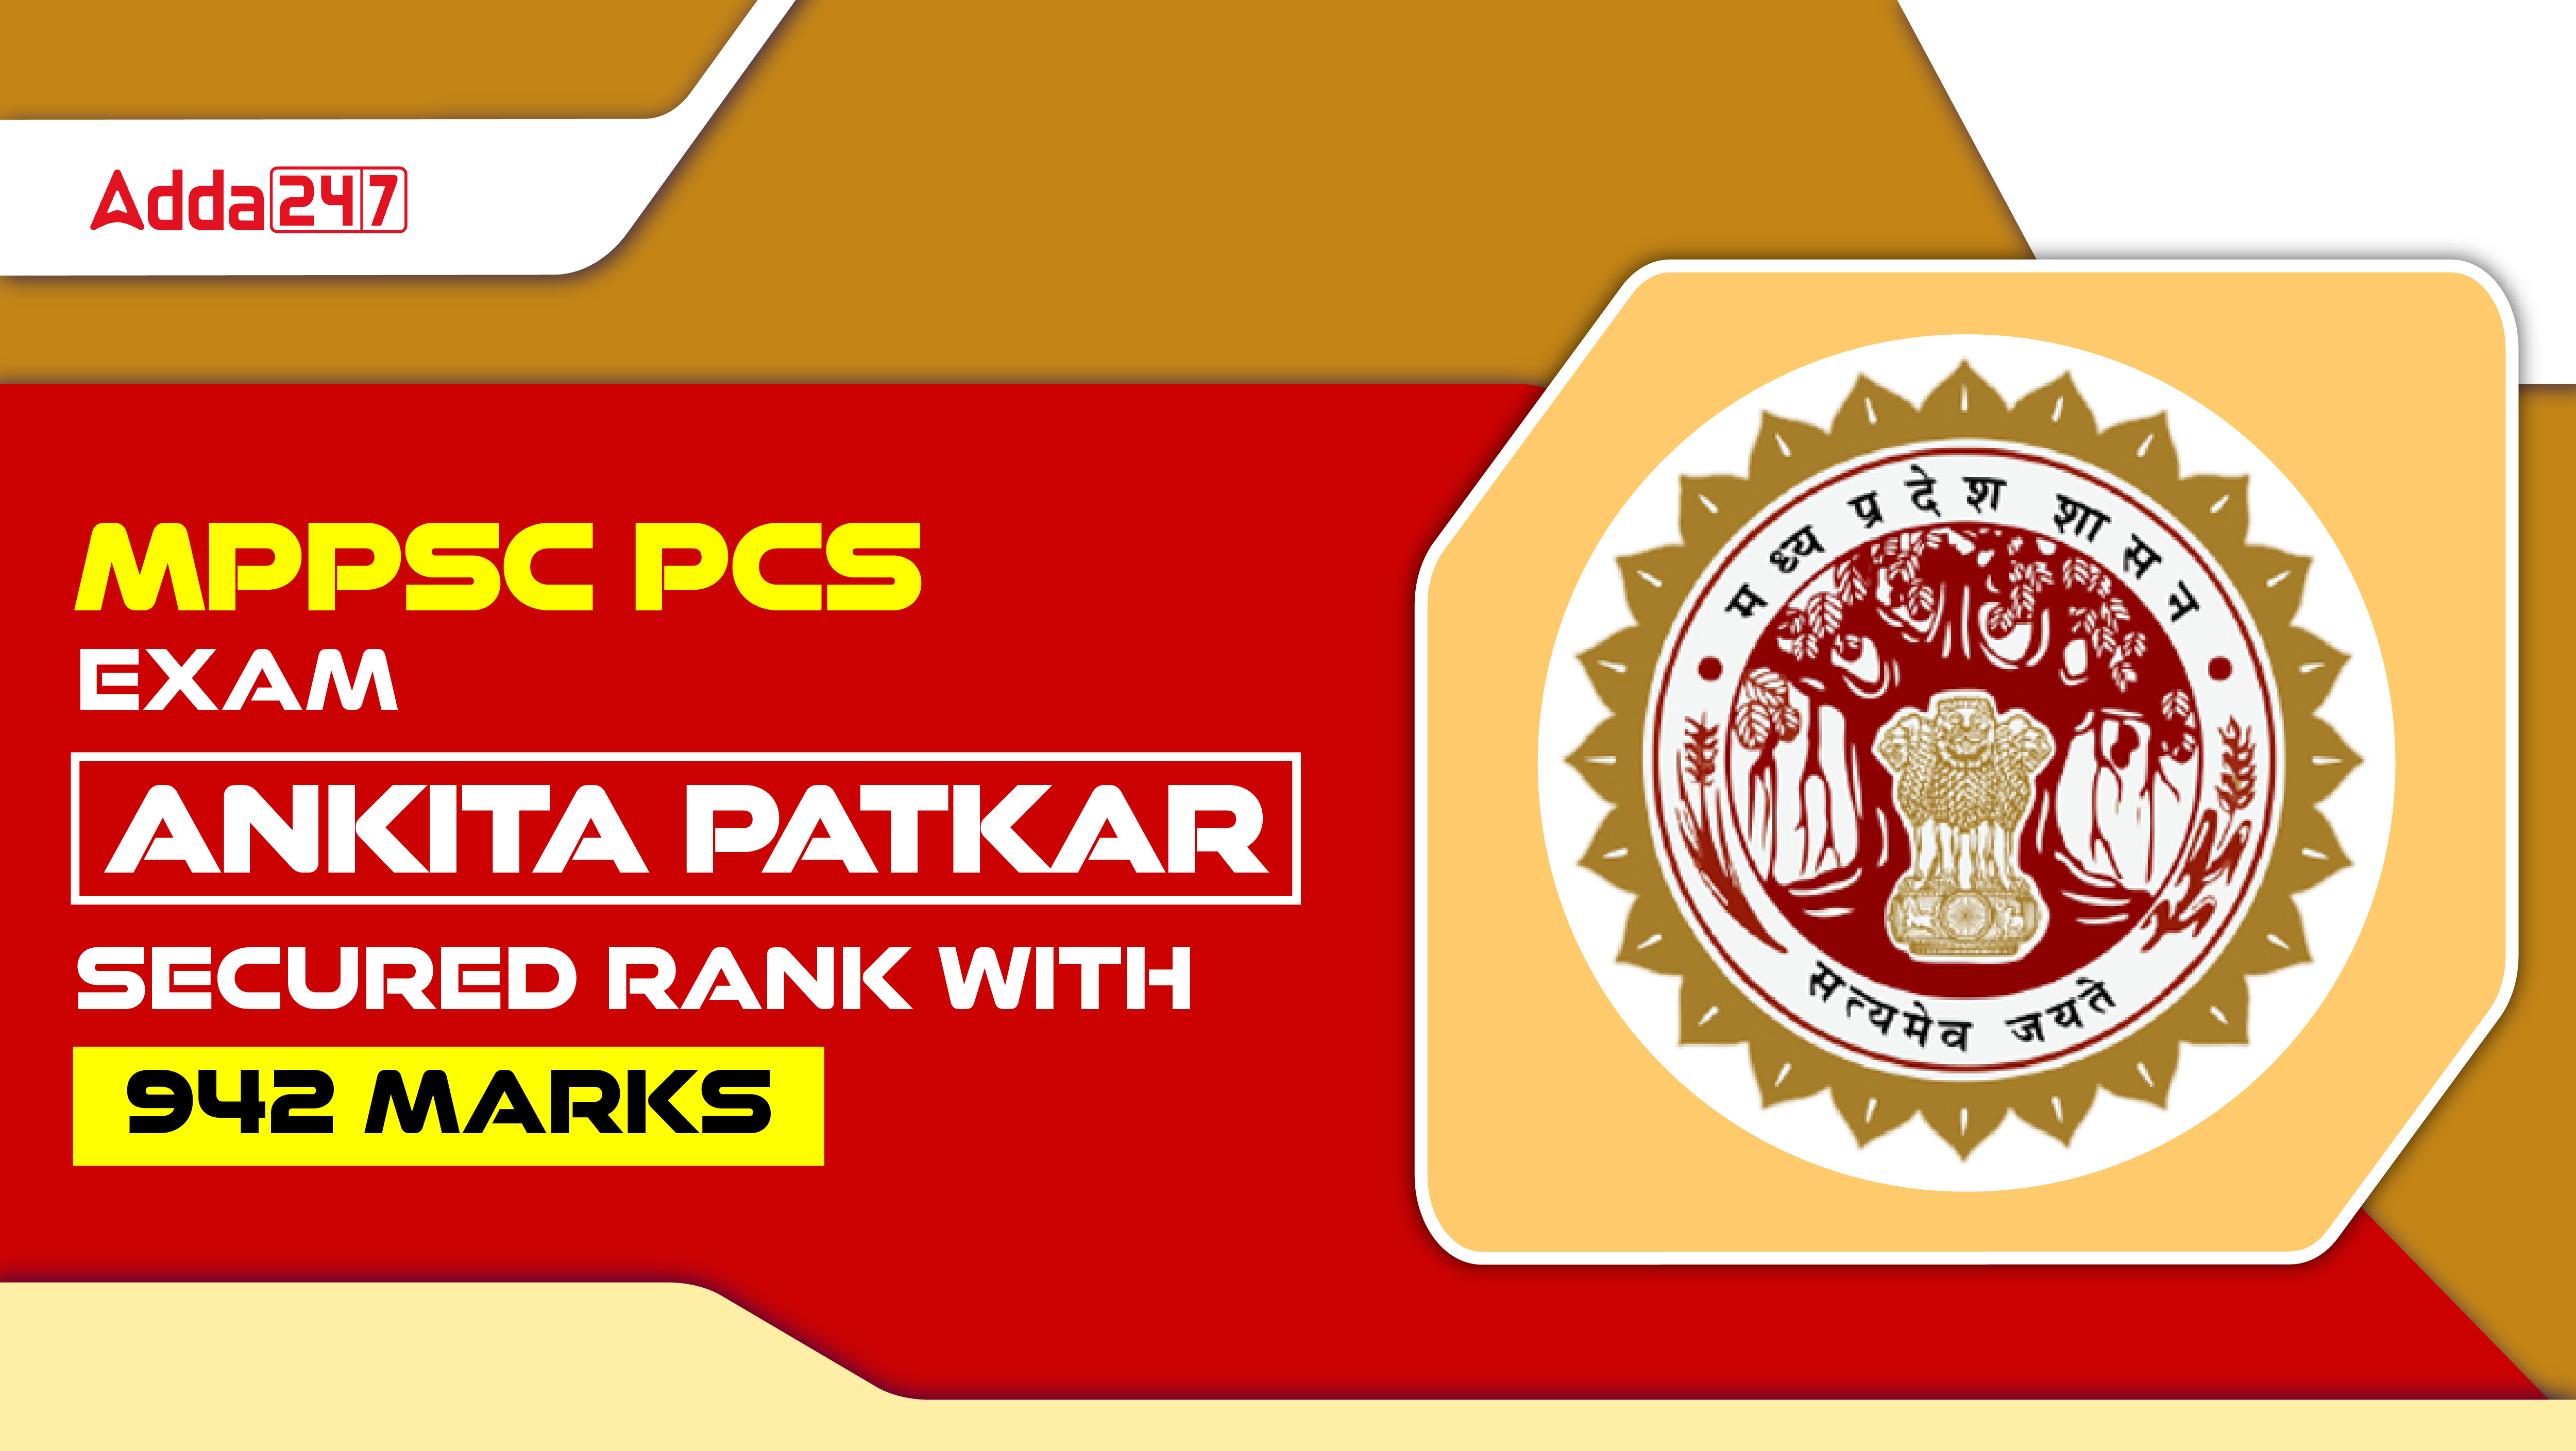 MPPSC PCS Exam, Ankita Patkar Secured Rank